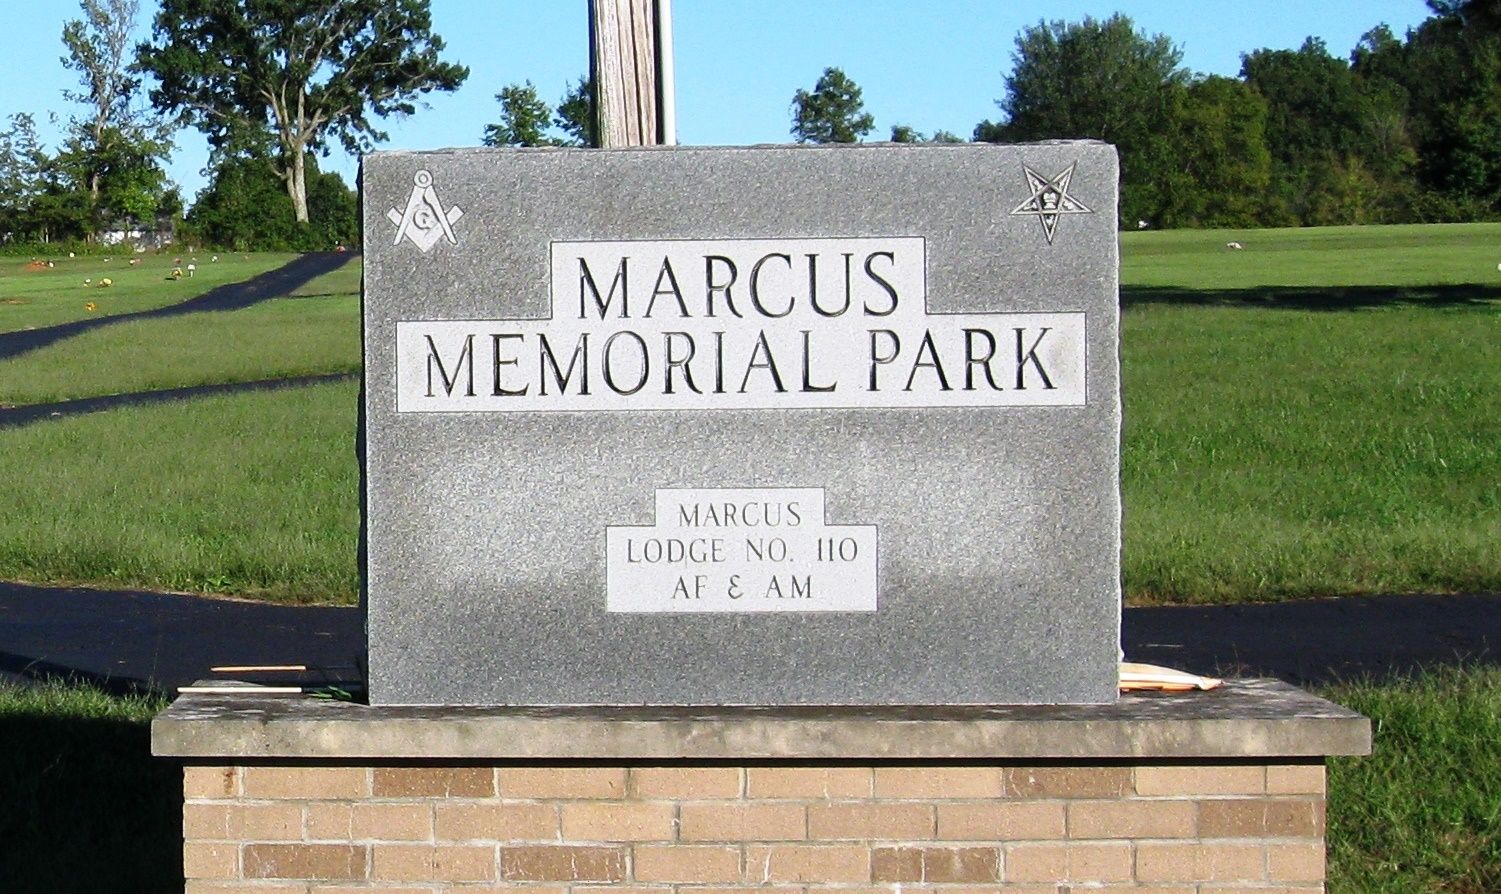 Marcus Memorial Park